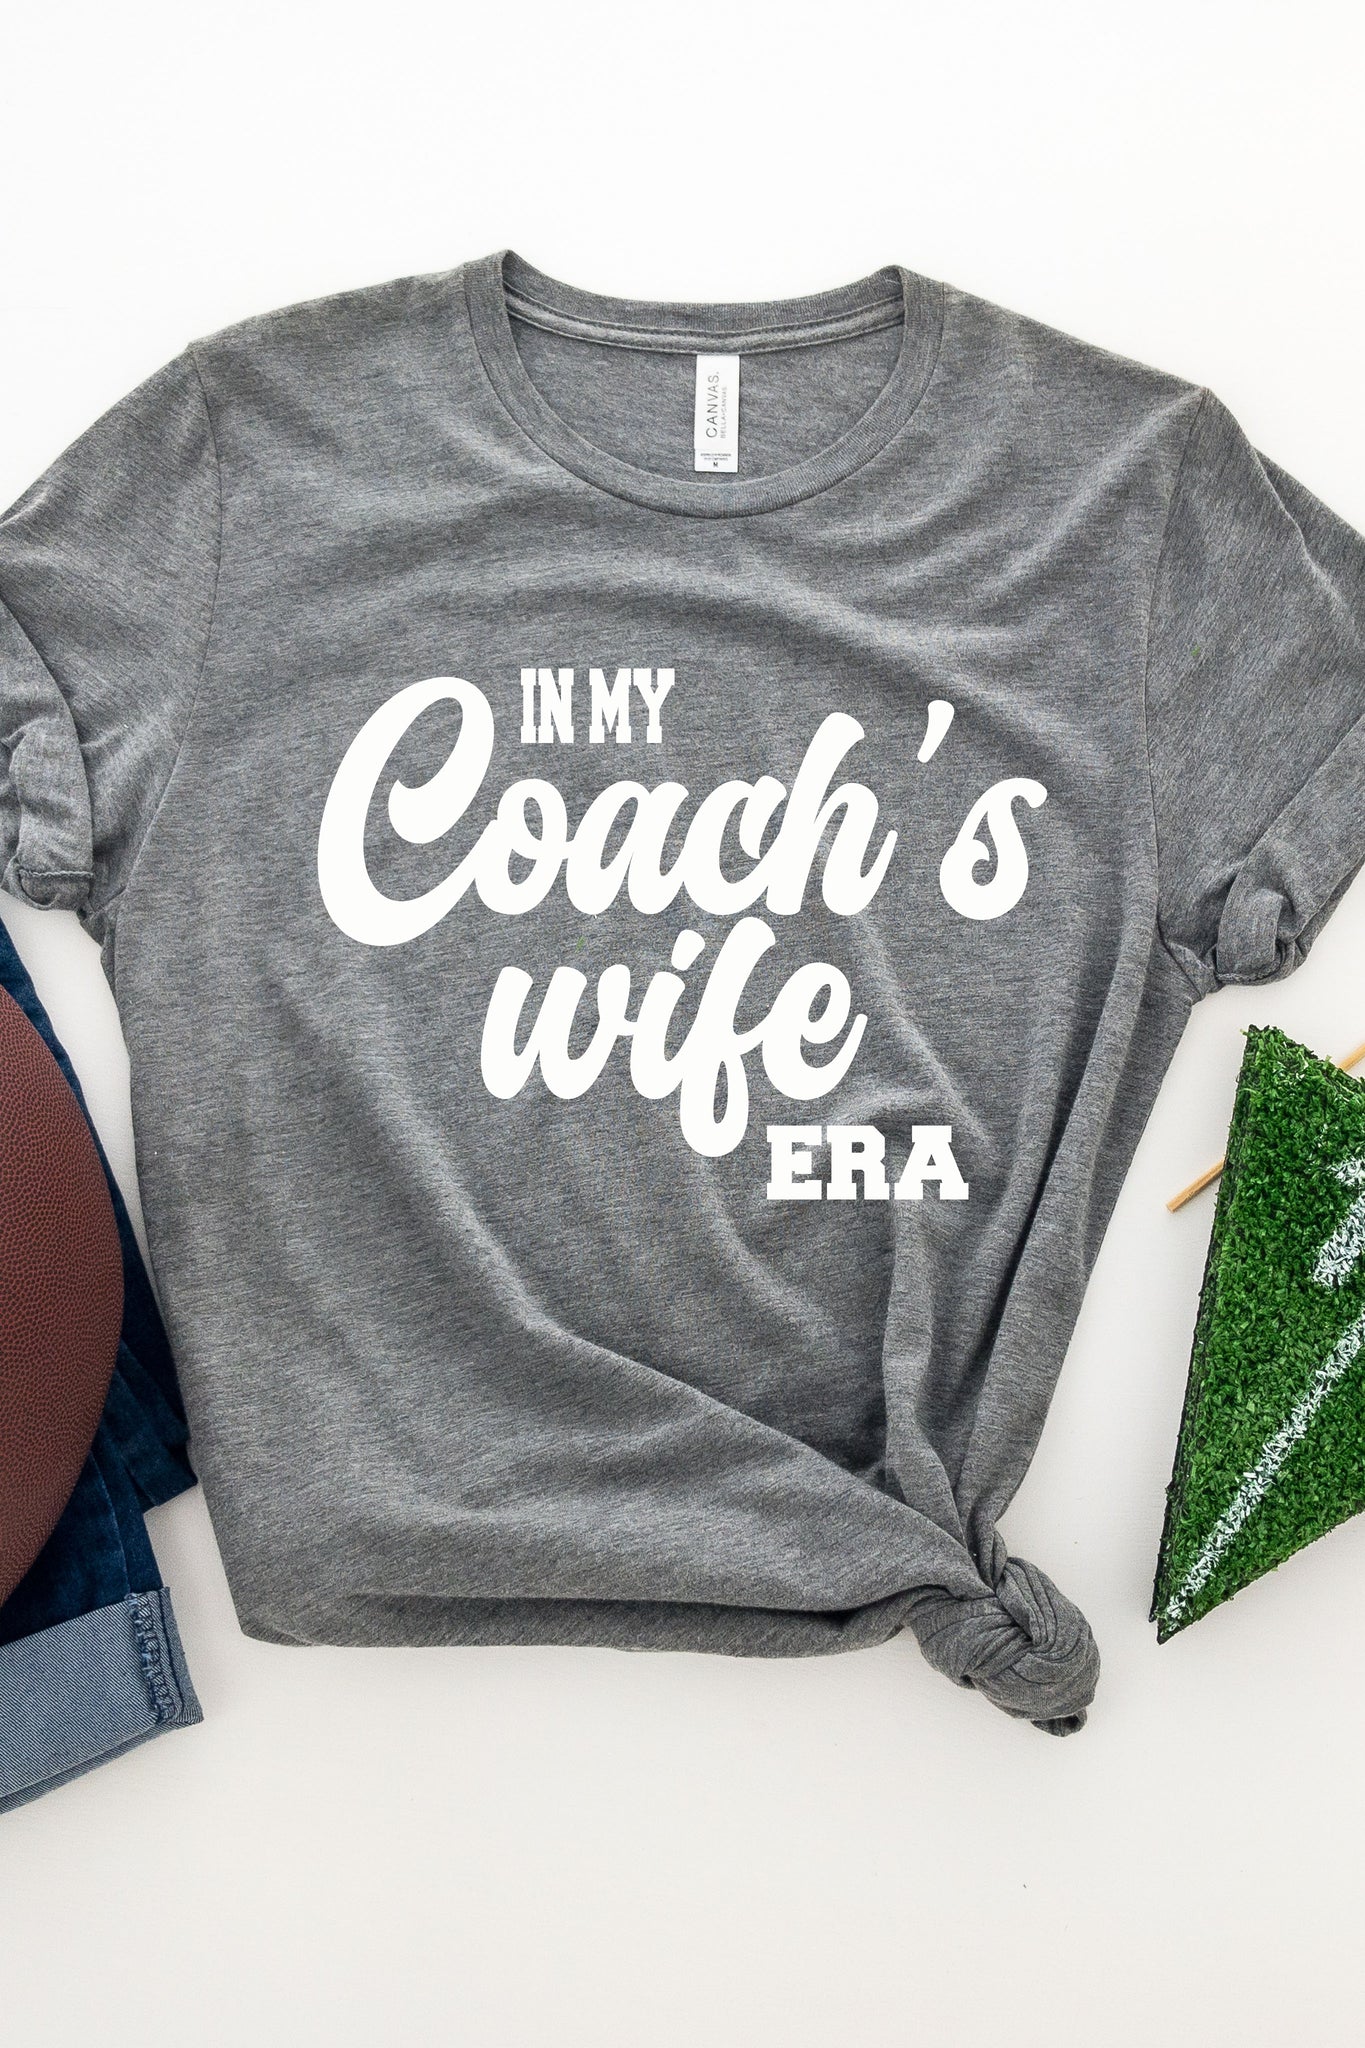 Coach's Wife Era Tee